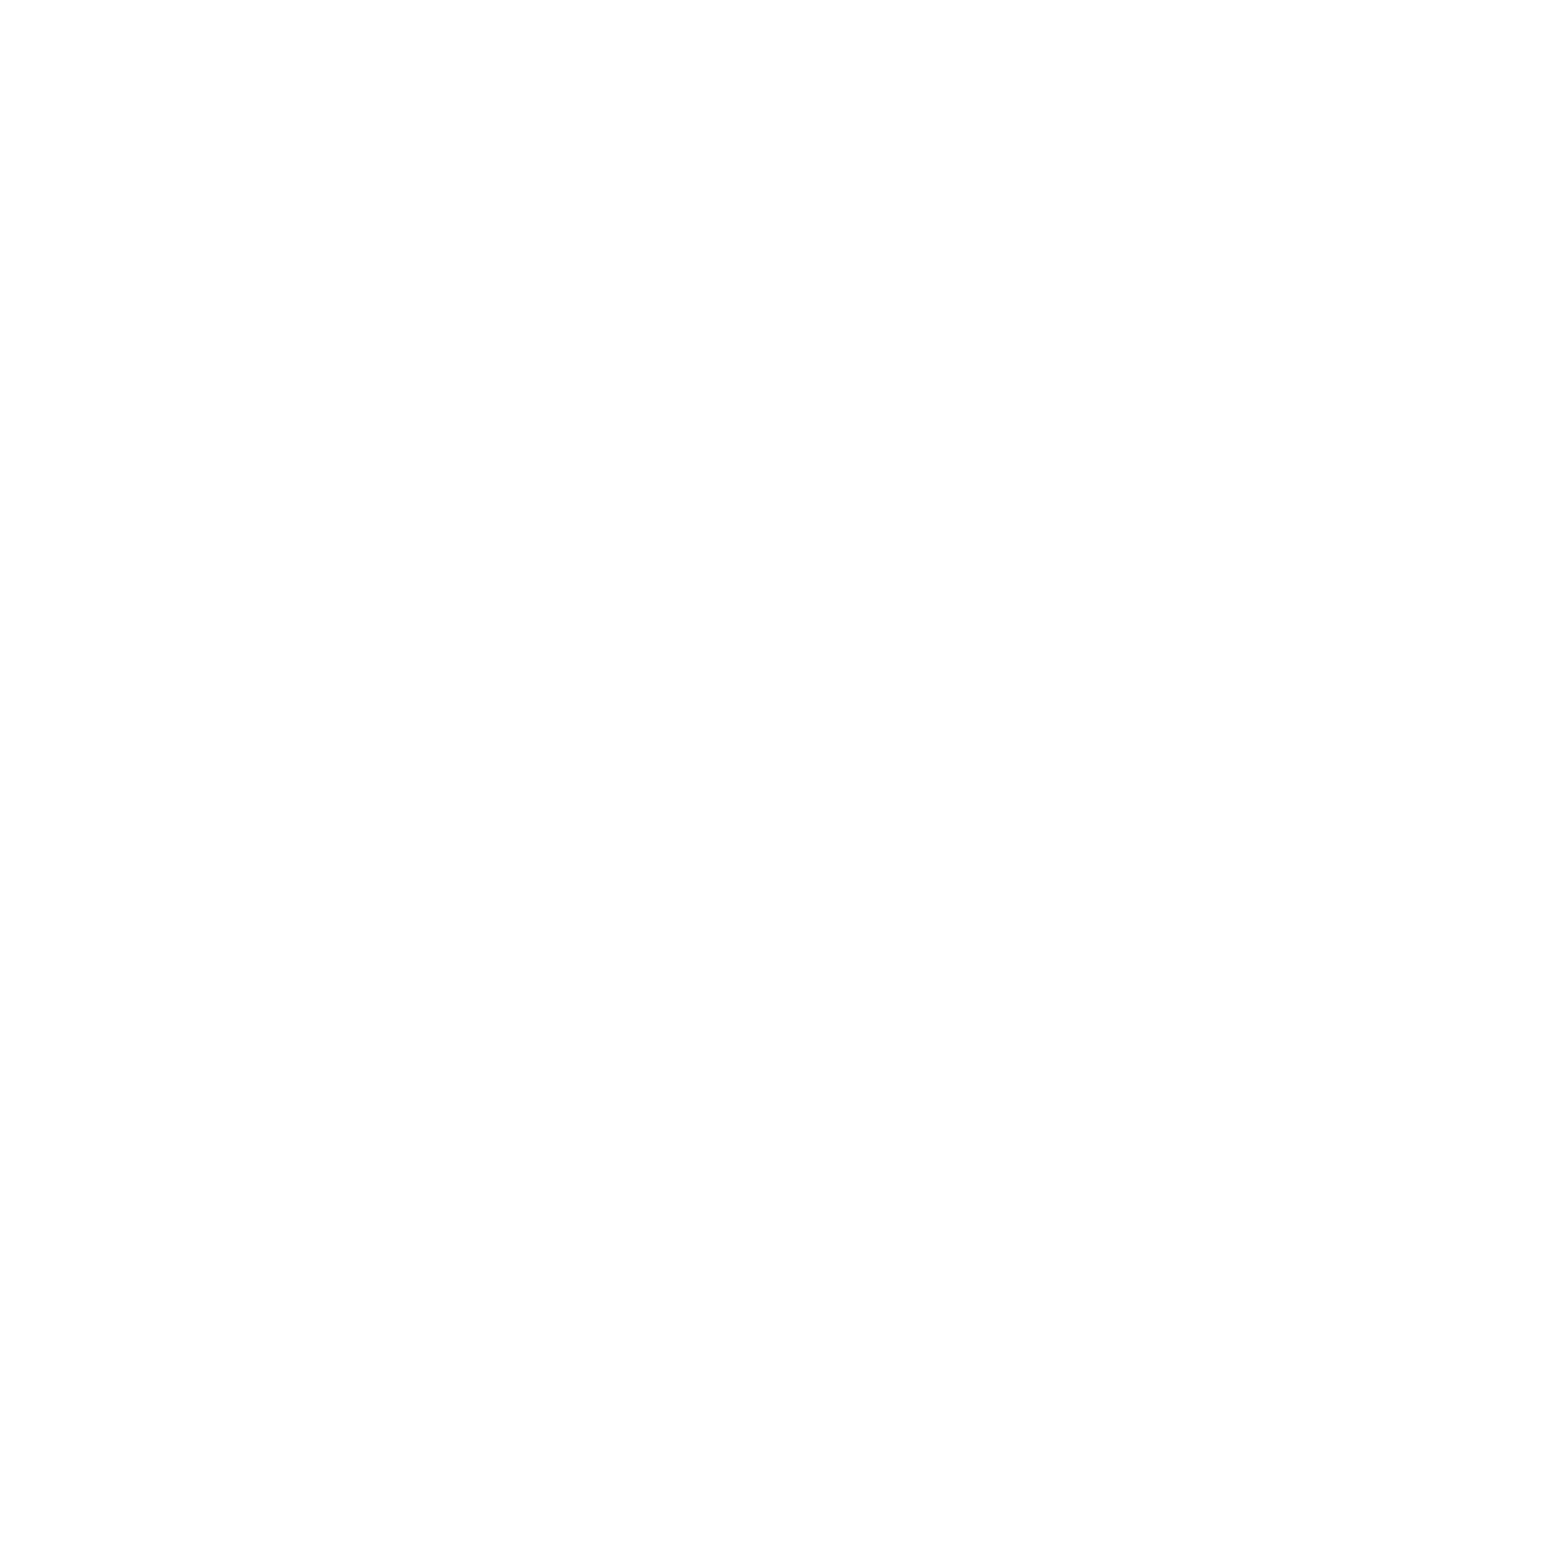 Bunge logo pour fonds sombres (PNG transparent)